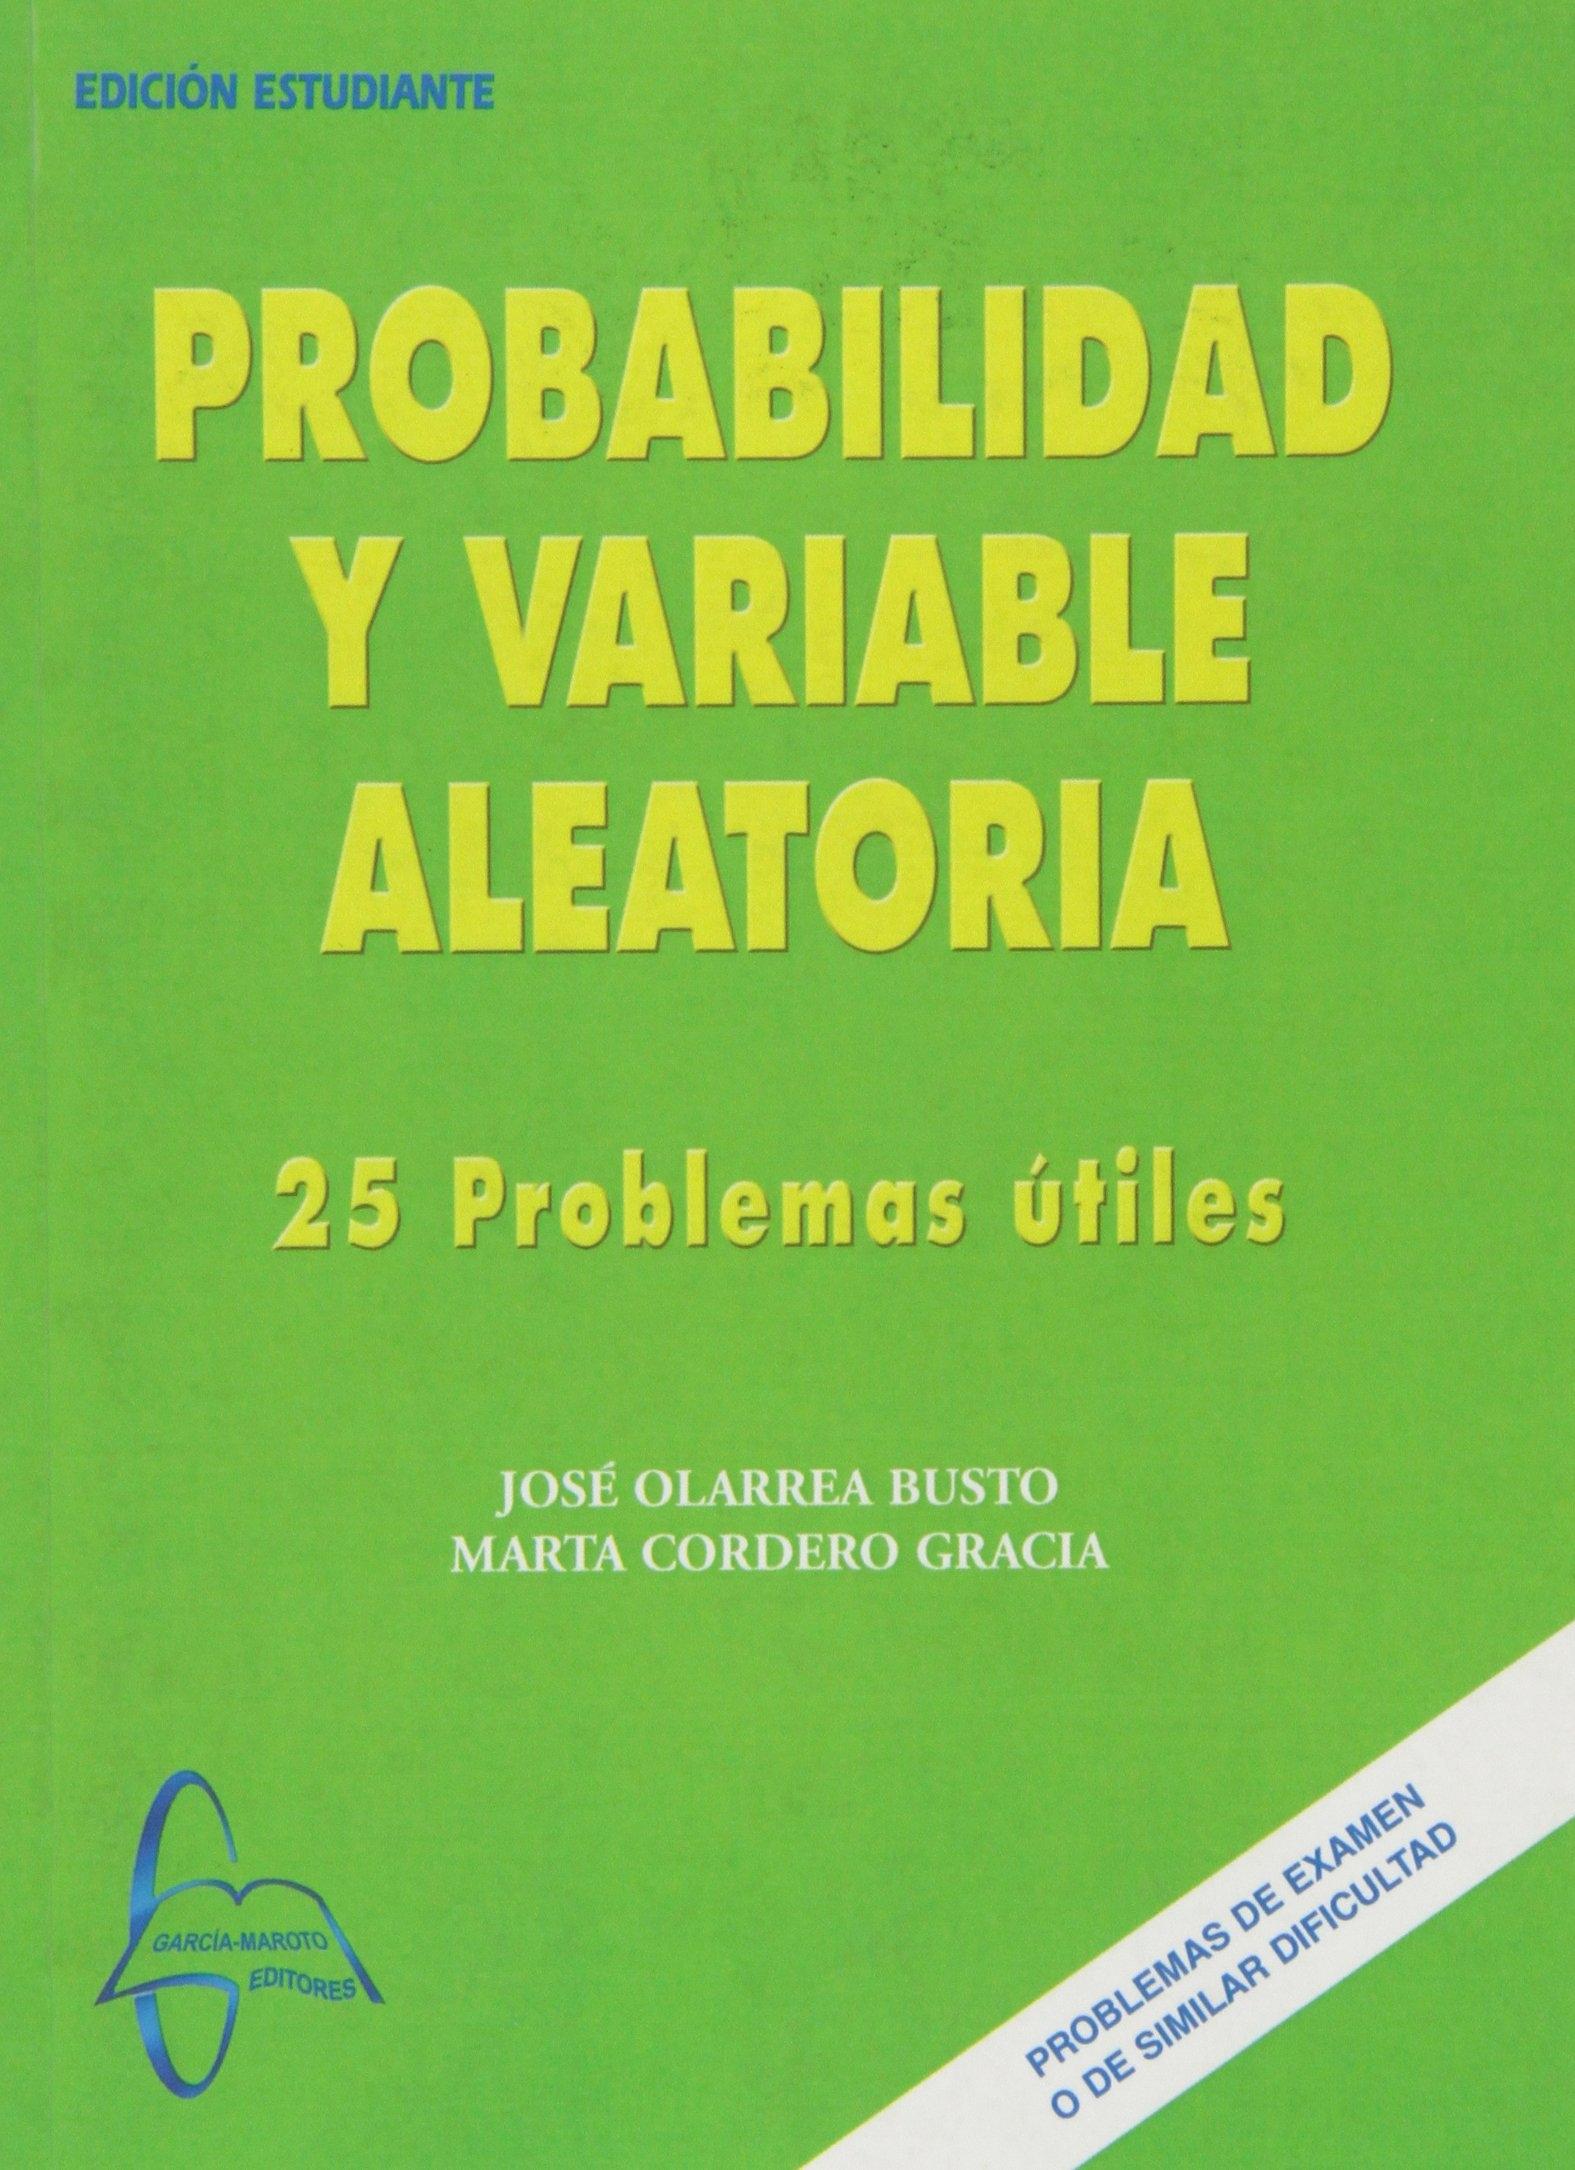 PROBAVILIDAD Y VARIABLE ALEATORIA  "25 PROBLEMAS ÚTILES"